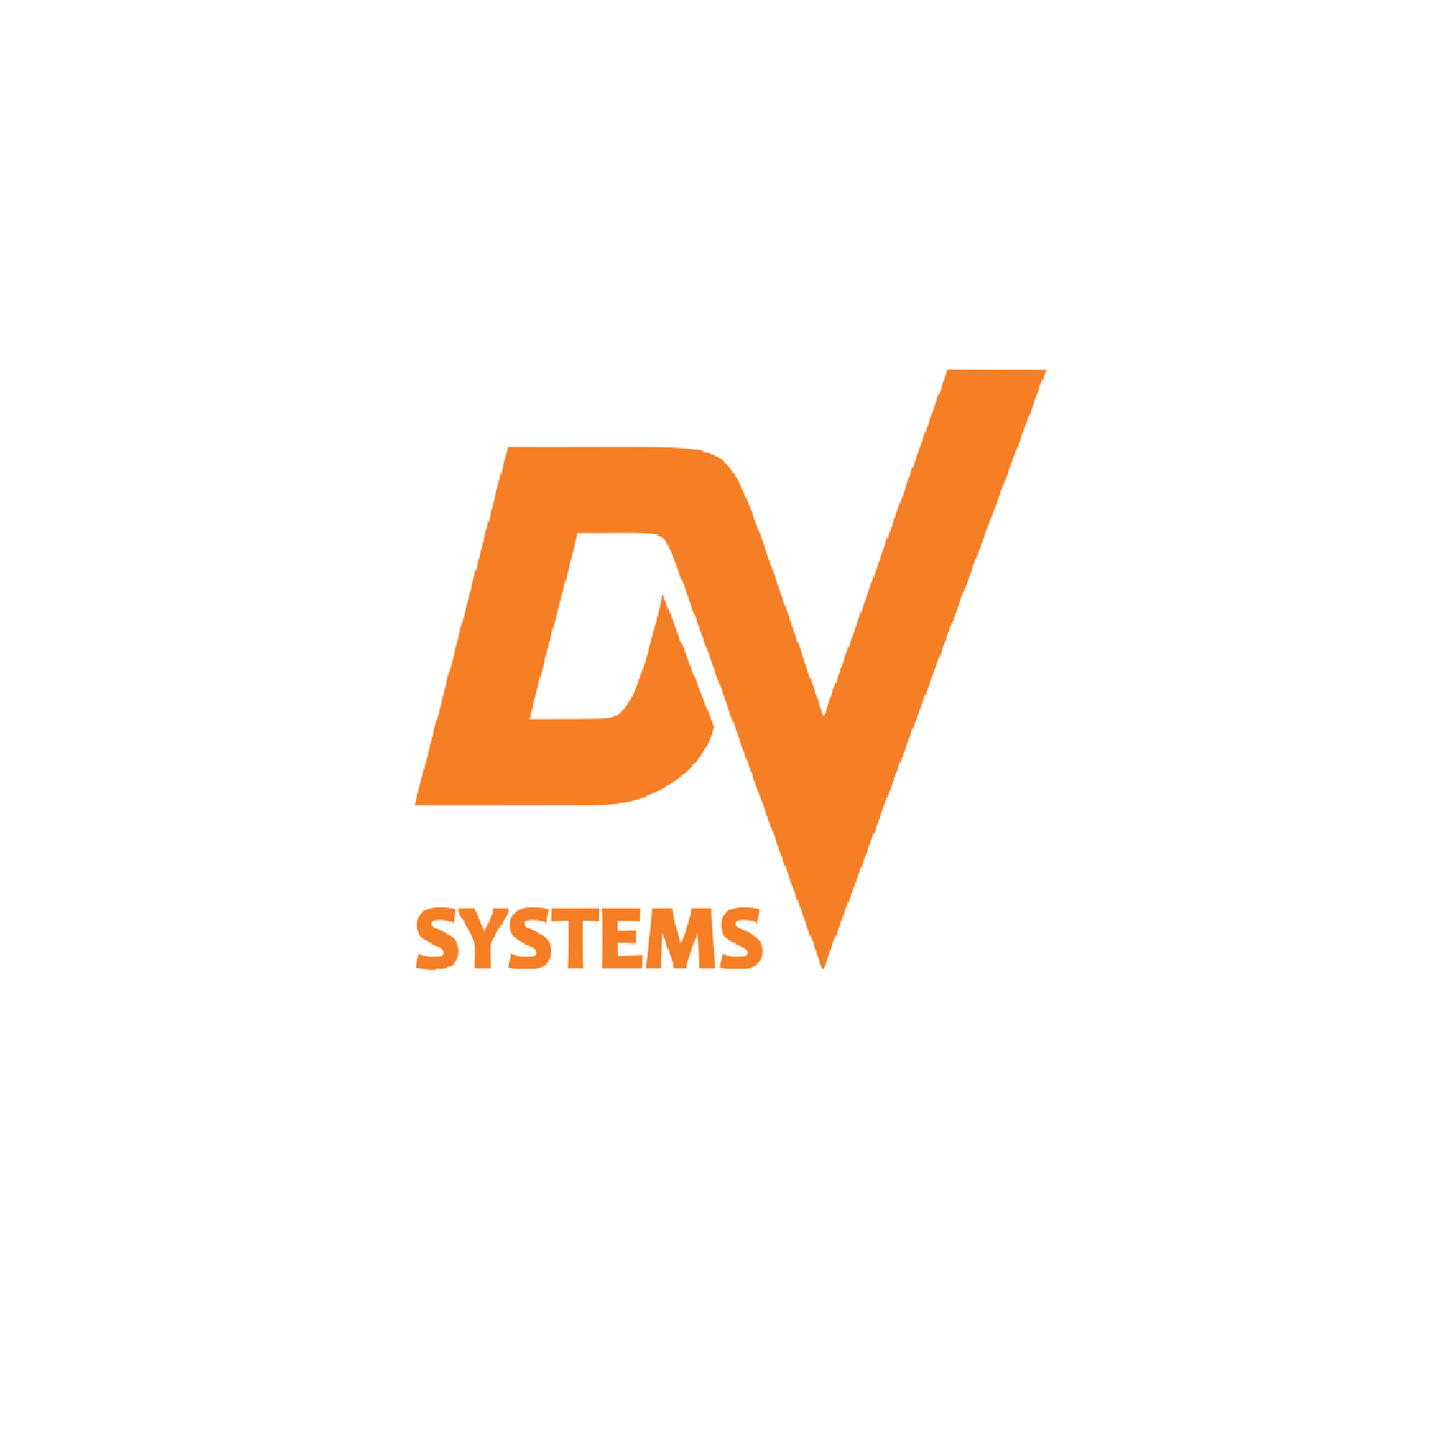 CCV-9403 Check Valve 3/4" NPTF X 3/4" NPTM DV SYSTEMS